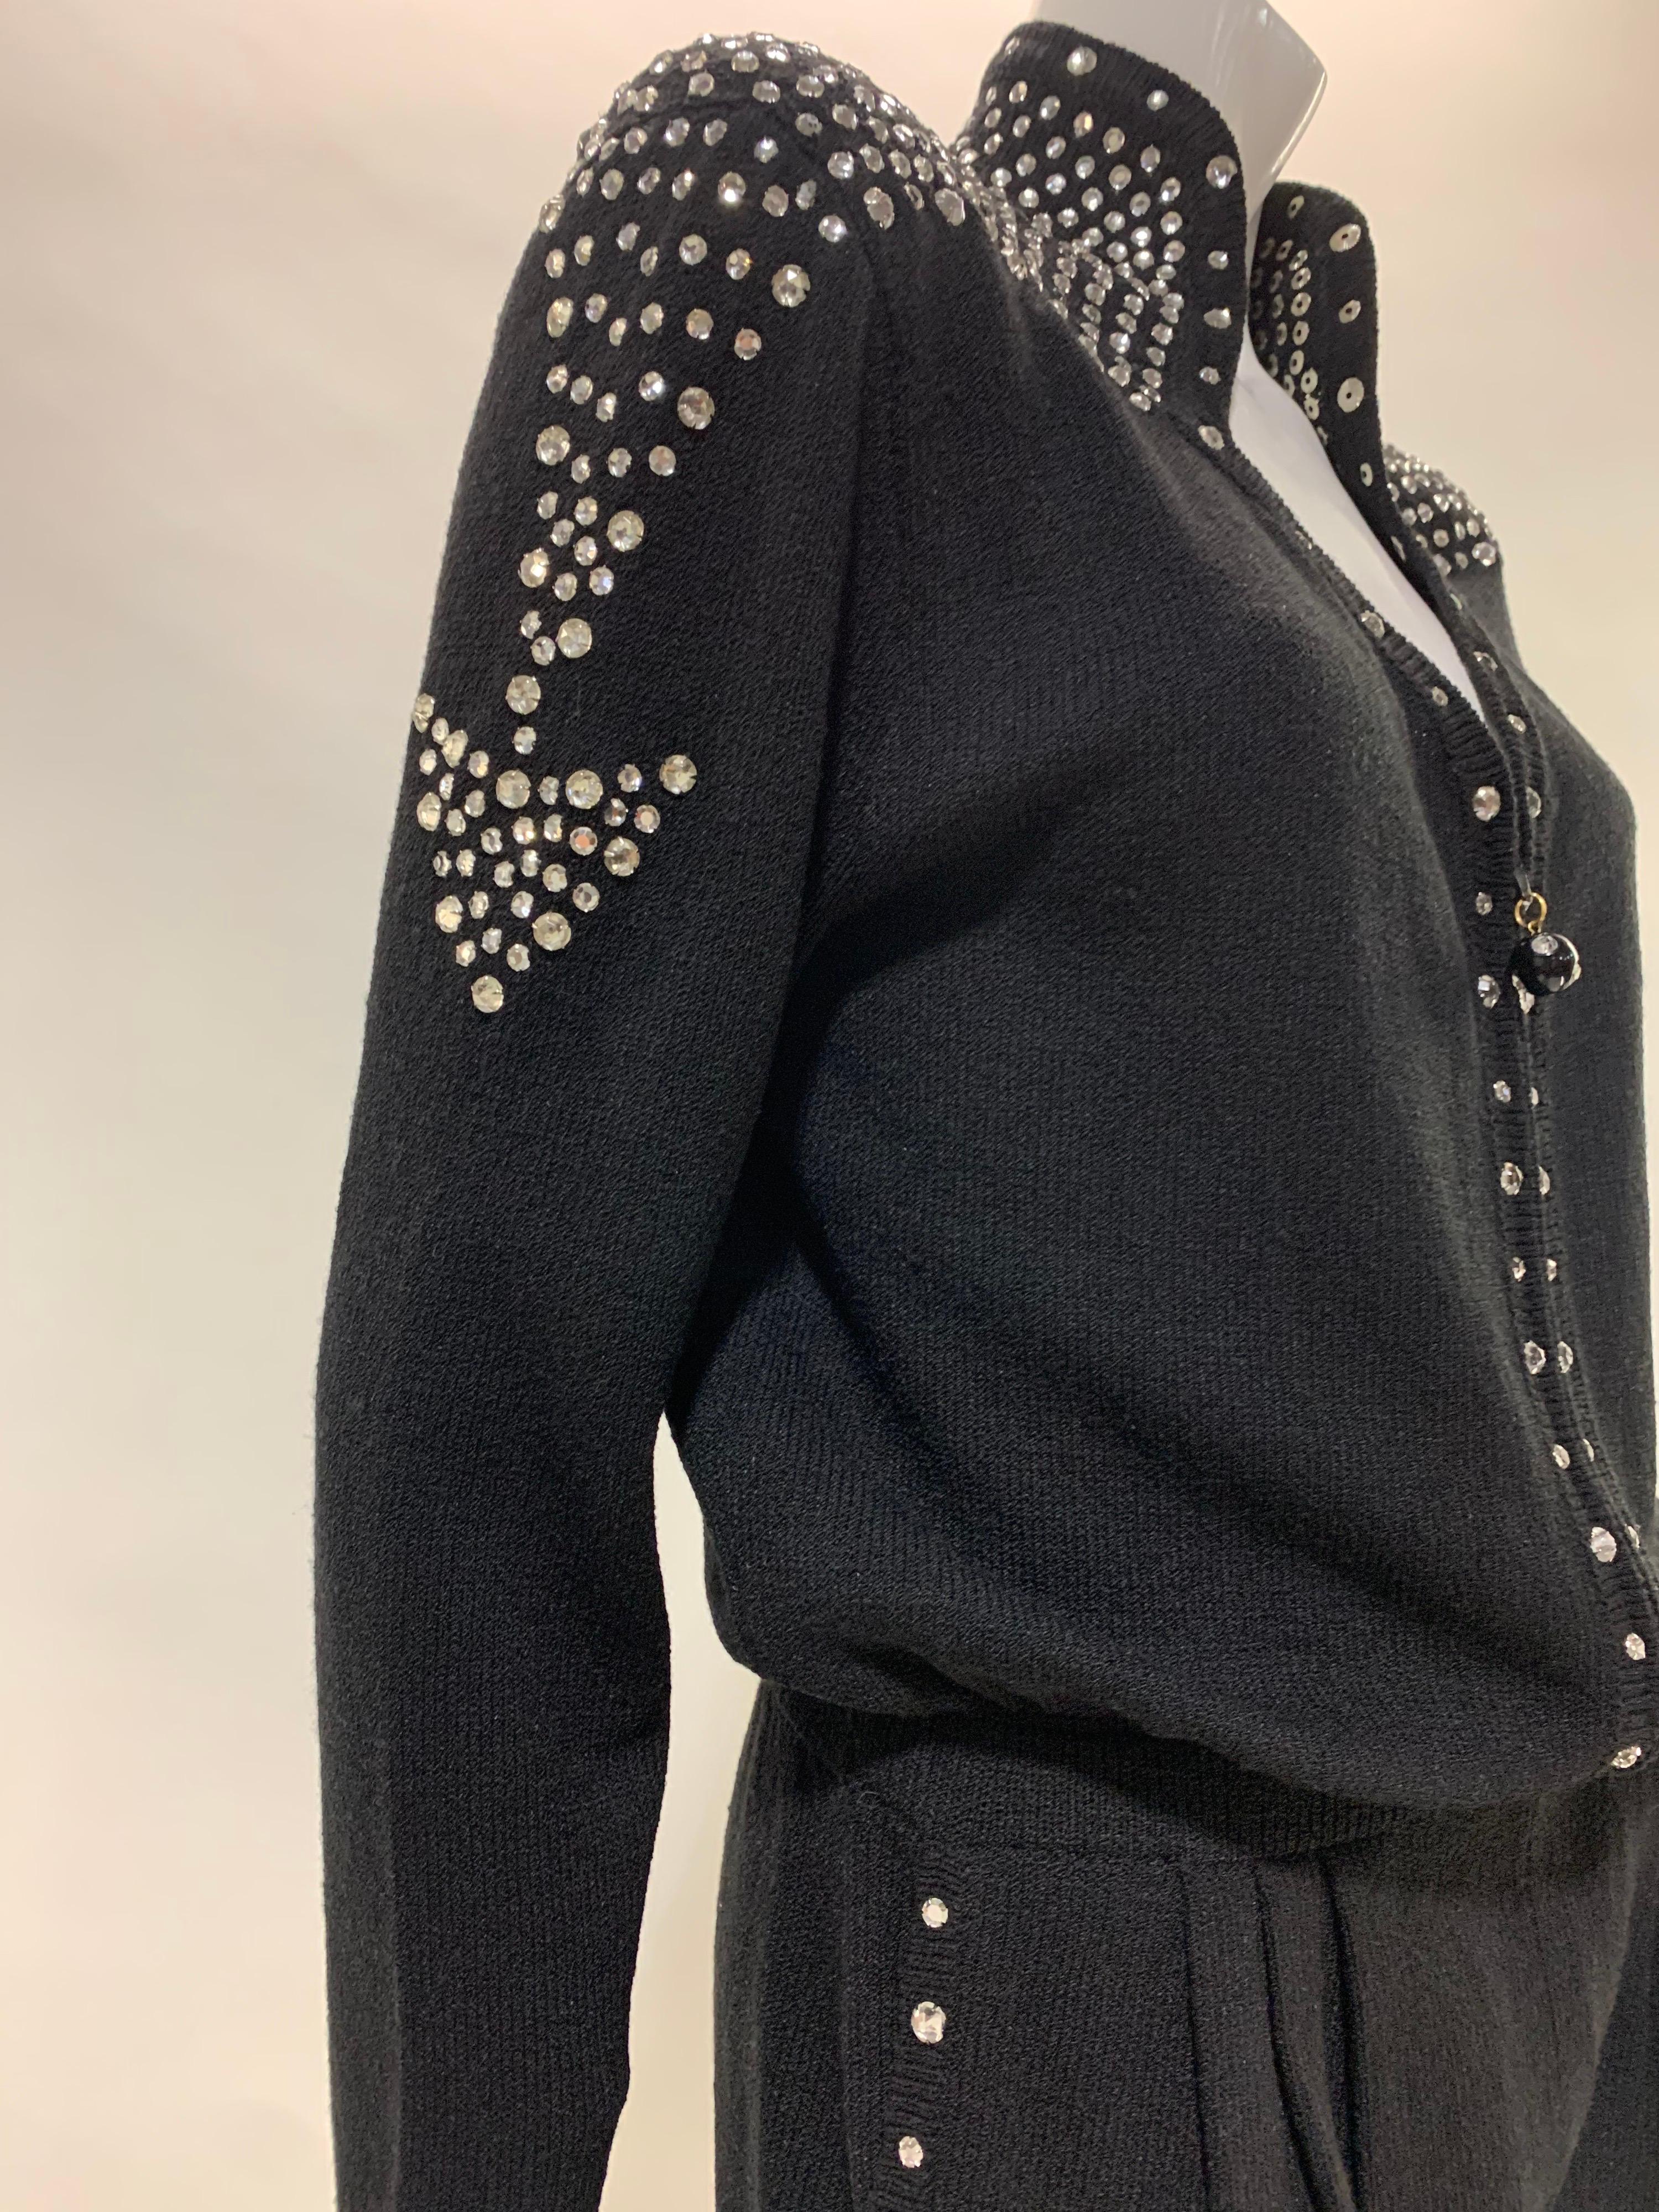 1980 Black Knit Jumpsuit w/ Structured Rhinestone Embellished Shoulder Arrows For Sale 4